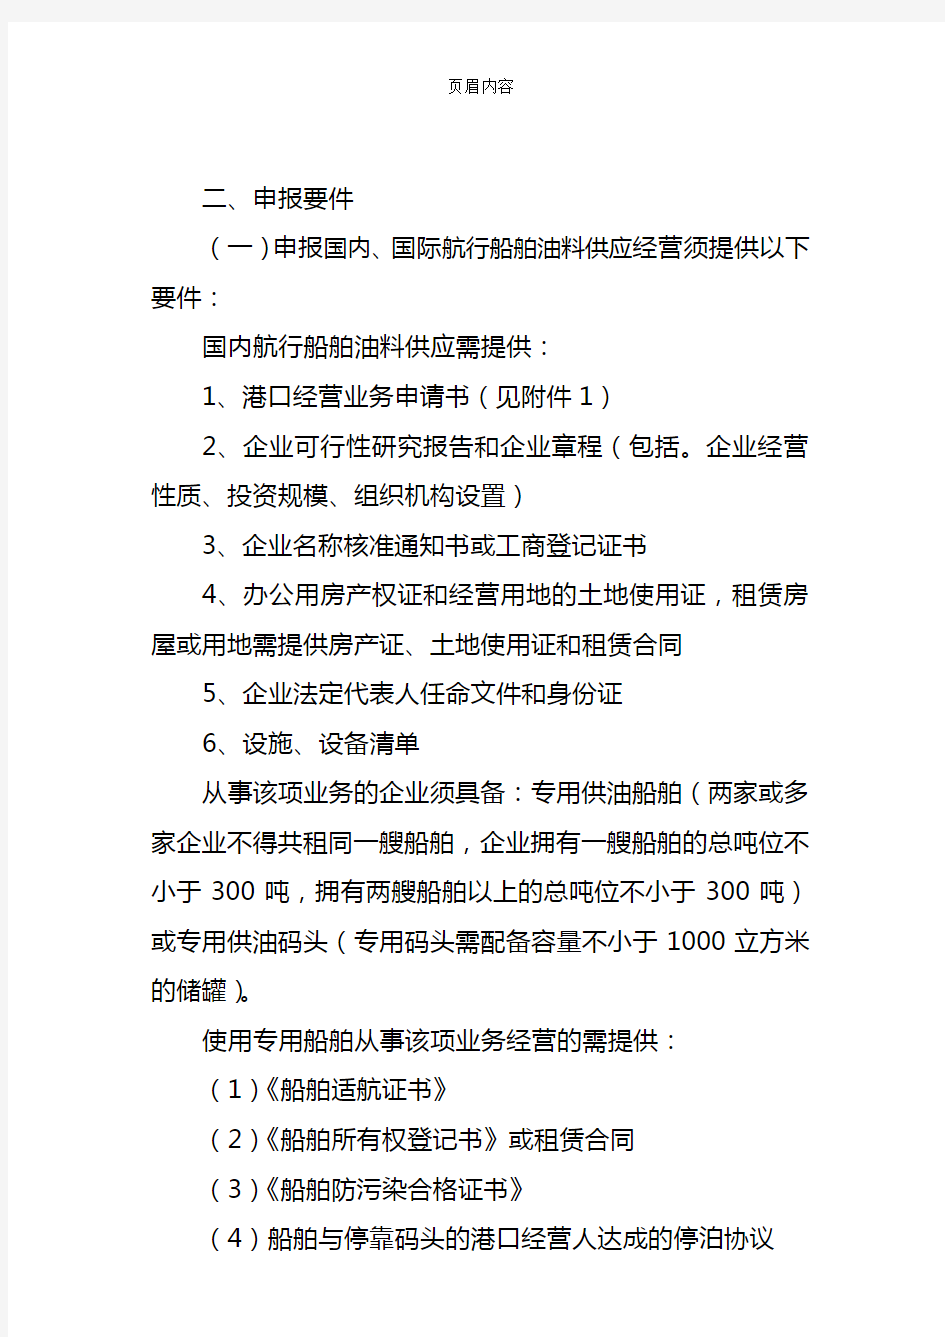 关于天津市船舶港口服务企业港口经营许可证申报